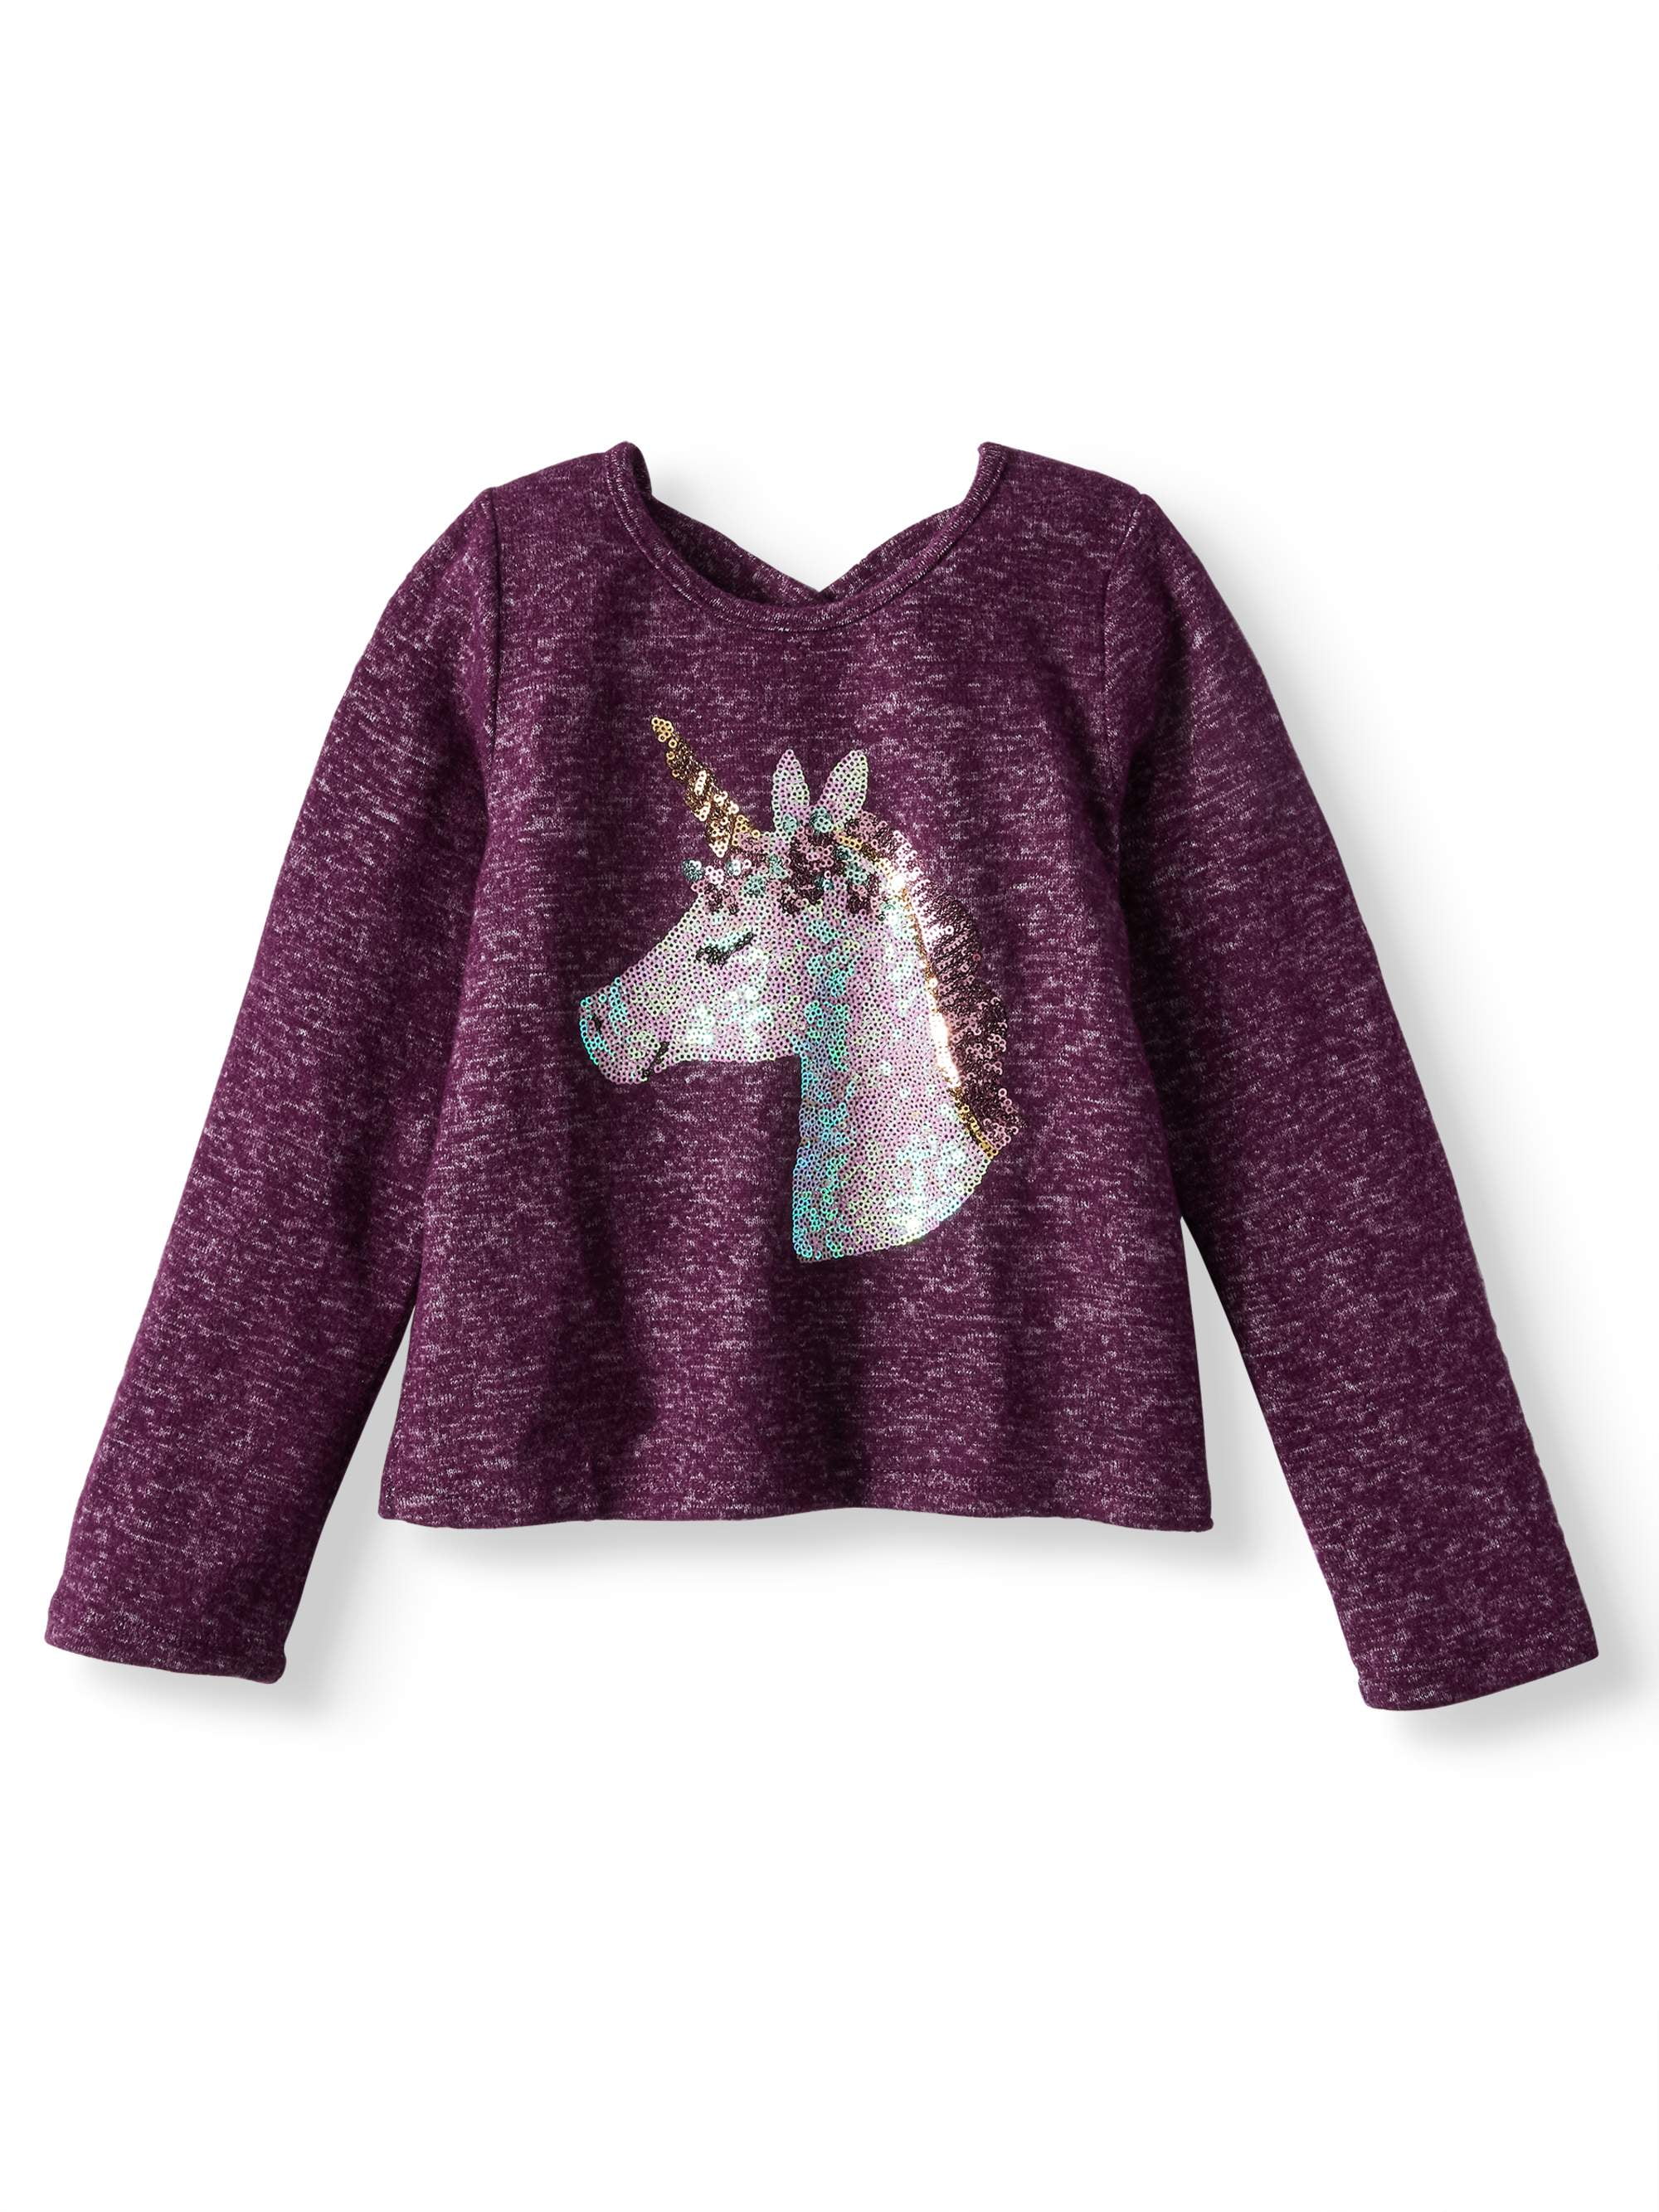 Sequin Unicorn Sweater Knit Top (Little Girls) - Walmart.com